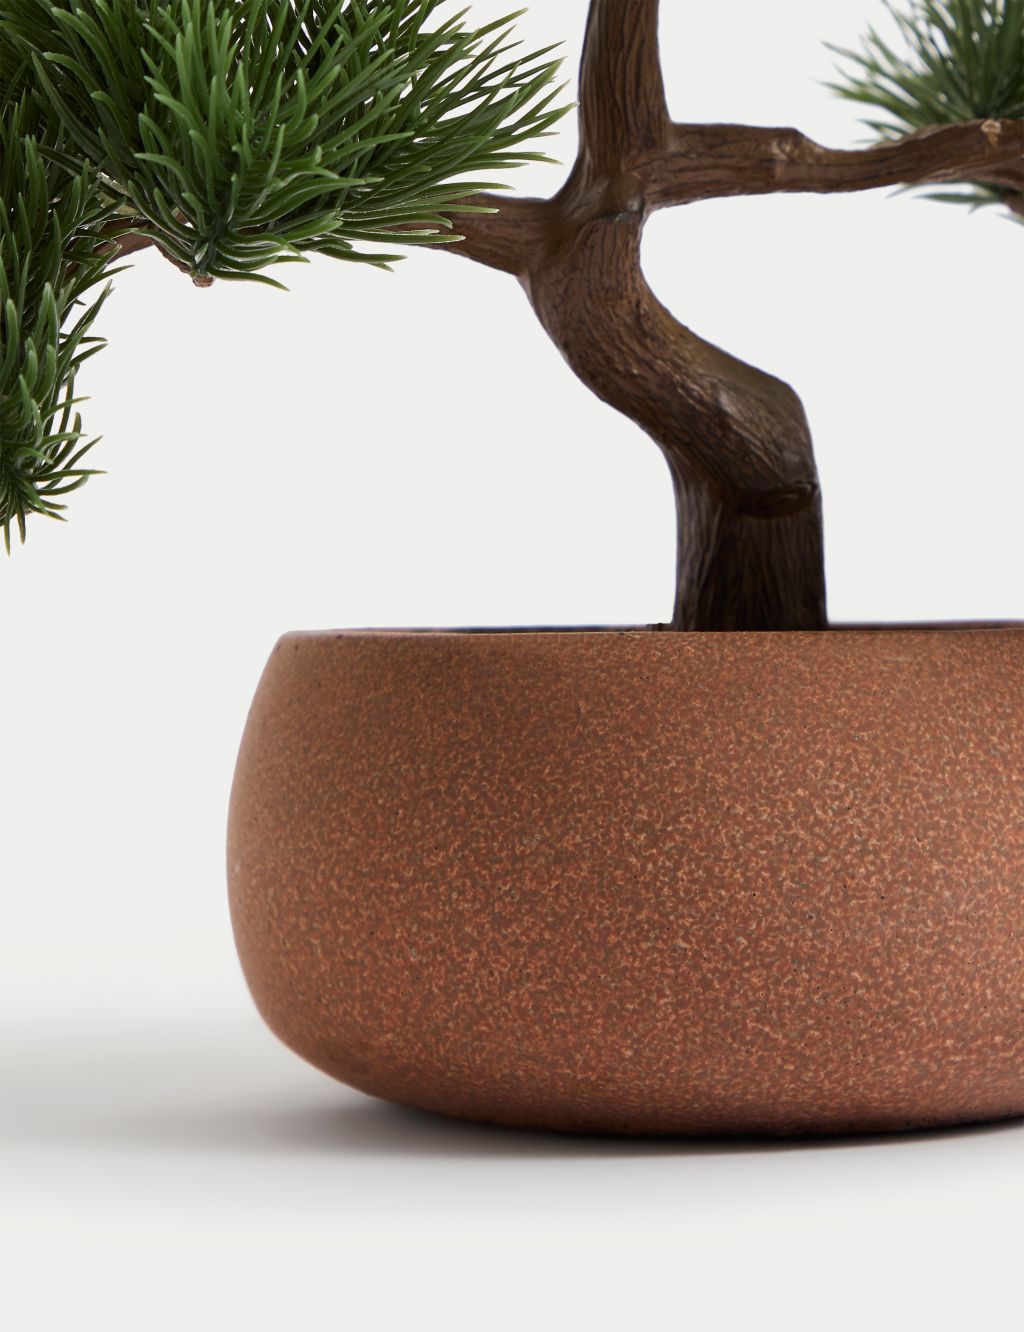 Artificial Bonsai Tree in Concrete Pot 2 of 5